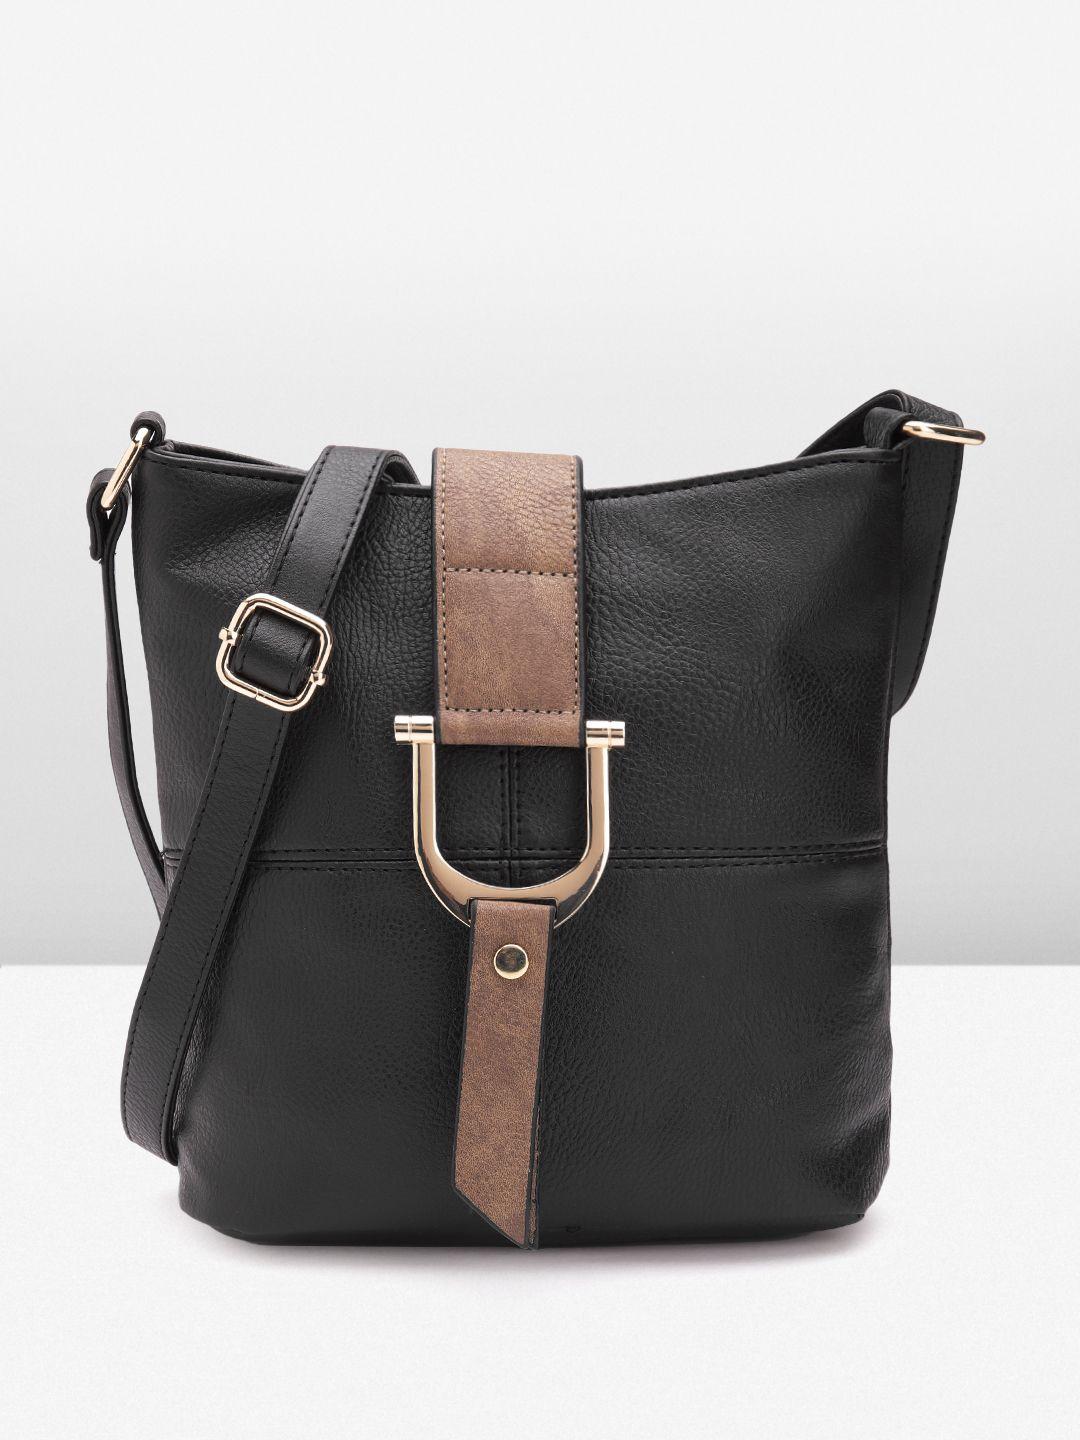 dorothy perkins structured sling bag